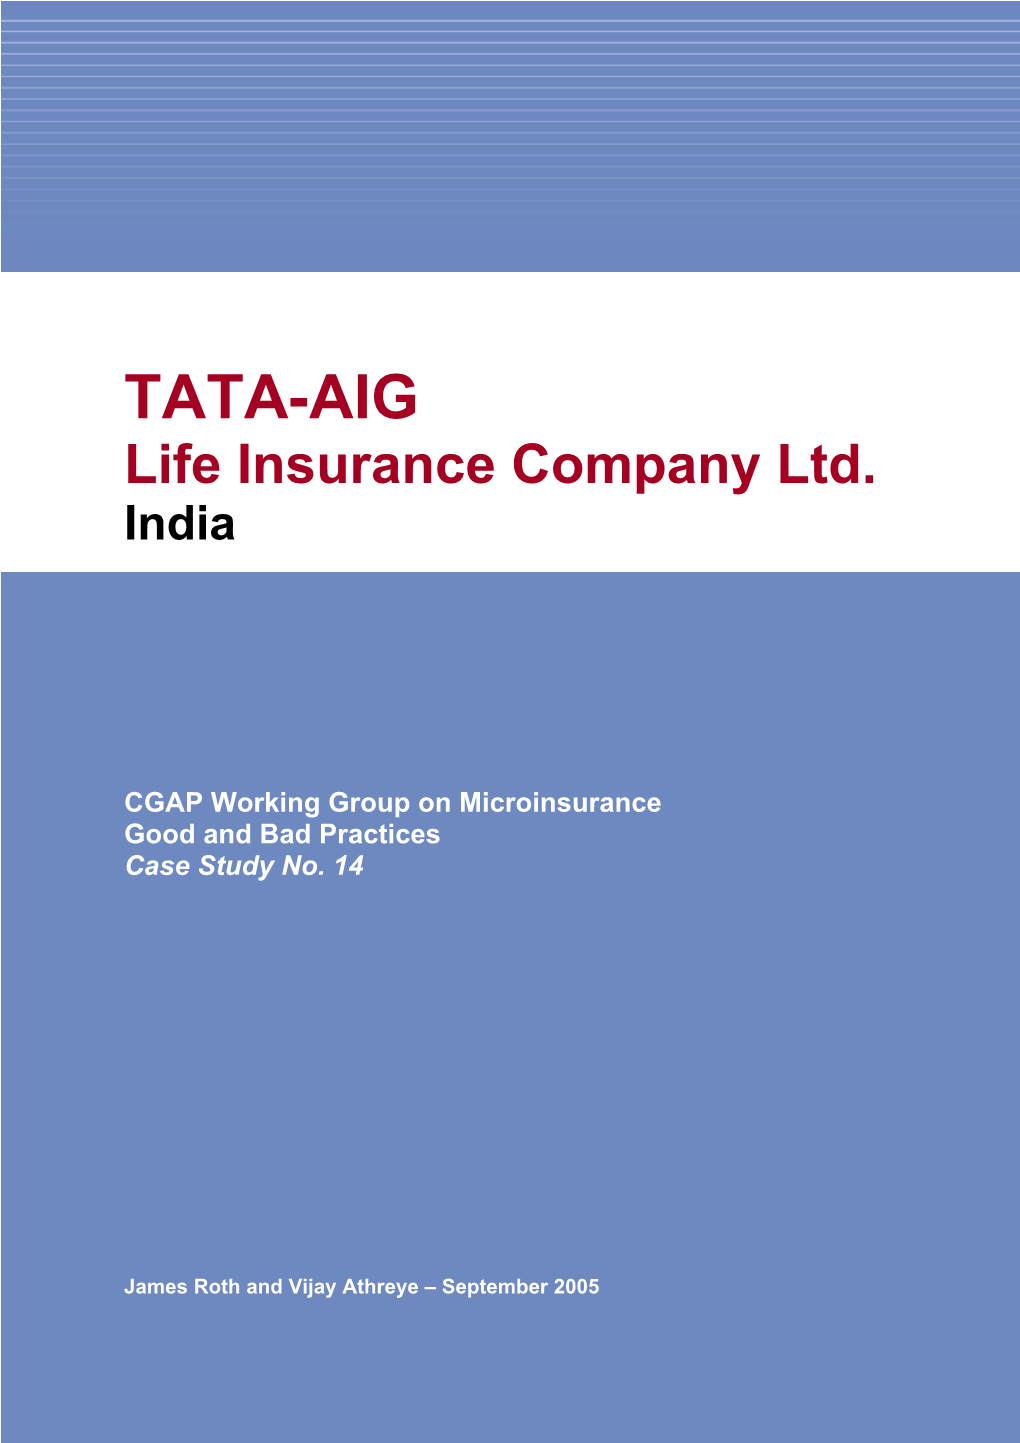 TATA-AIG, Life Insurance Company Ltd., India